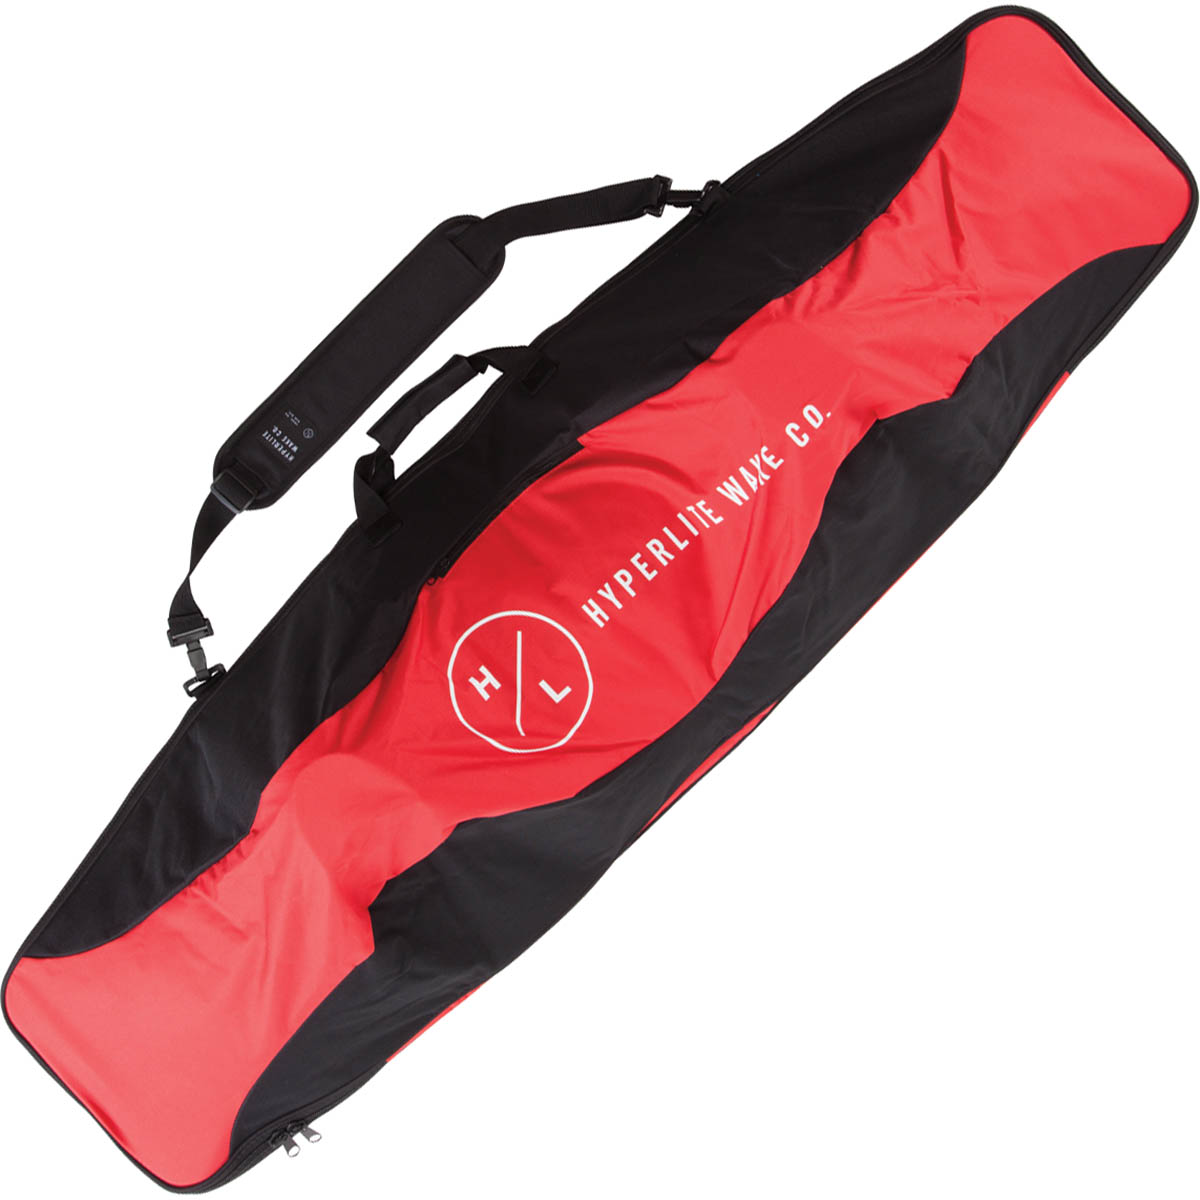 Hyperlite Essential Wakeboard Bag in Red - BoardCo